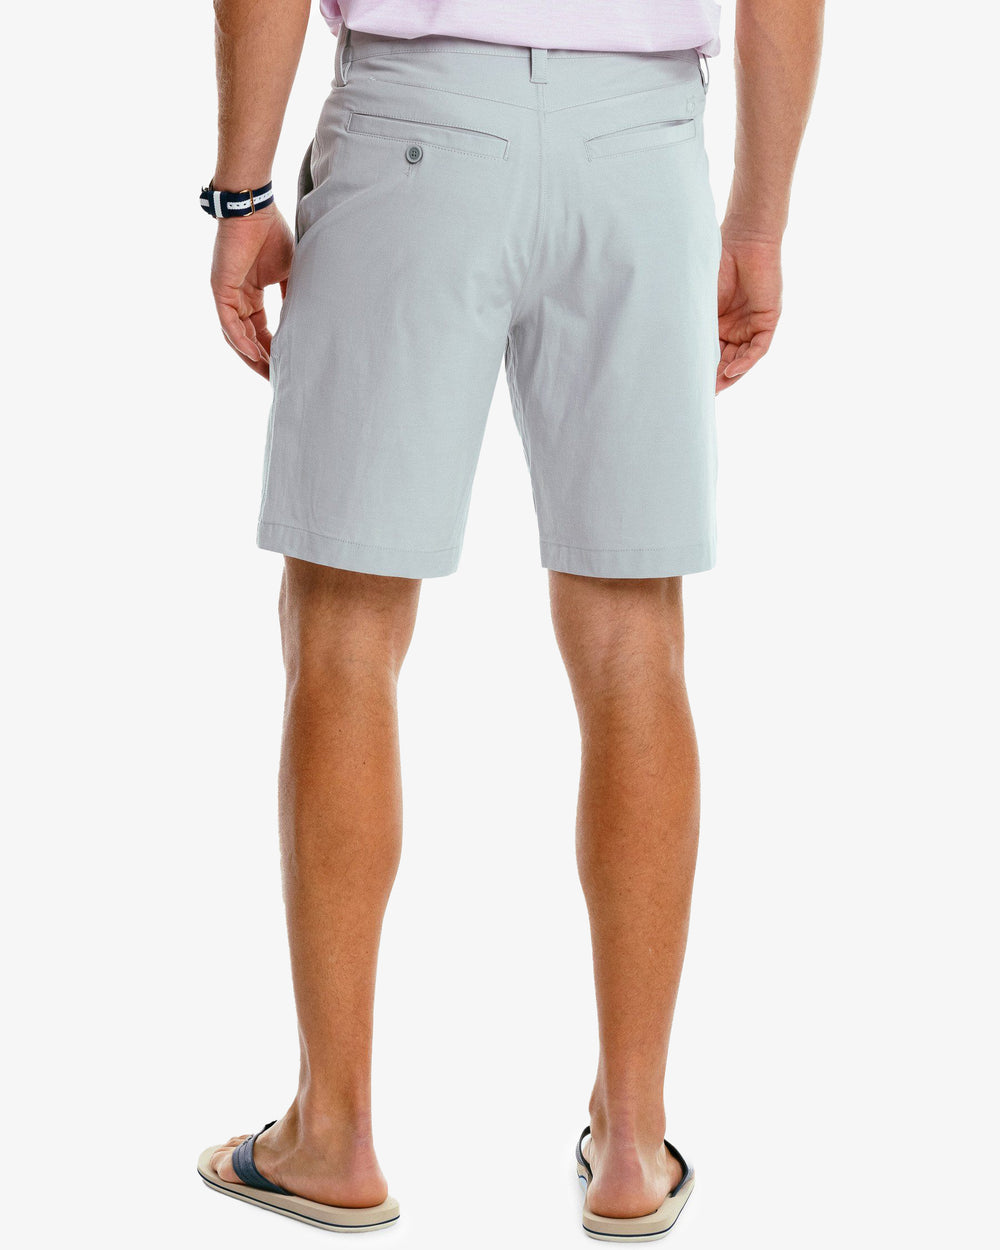 Simply Southern Mens Gray Shorts